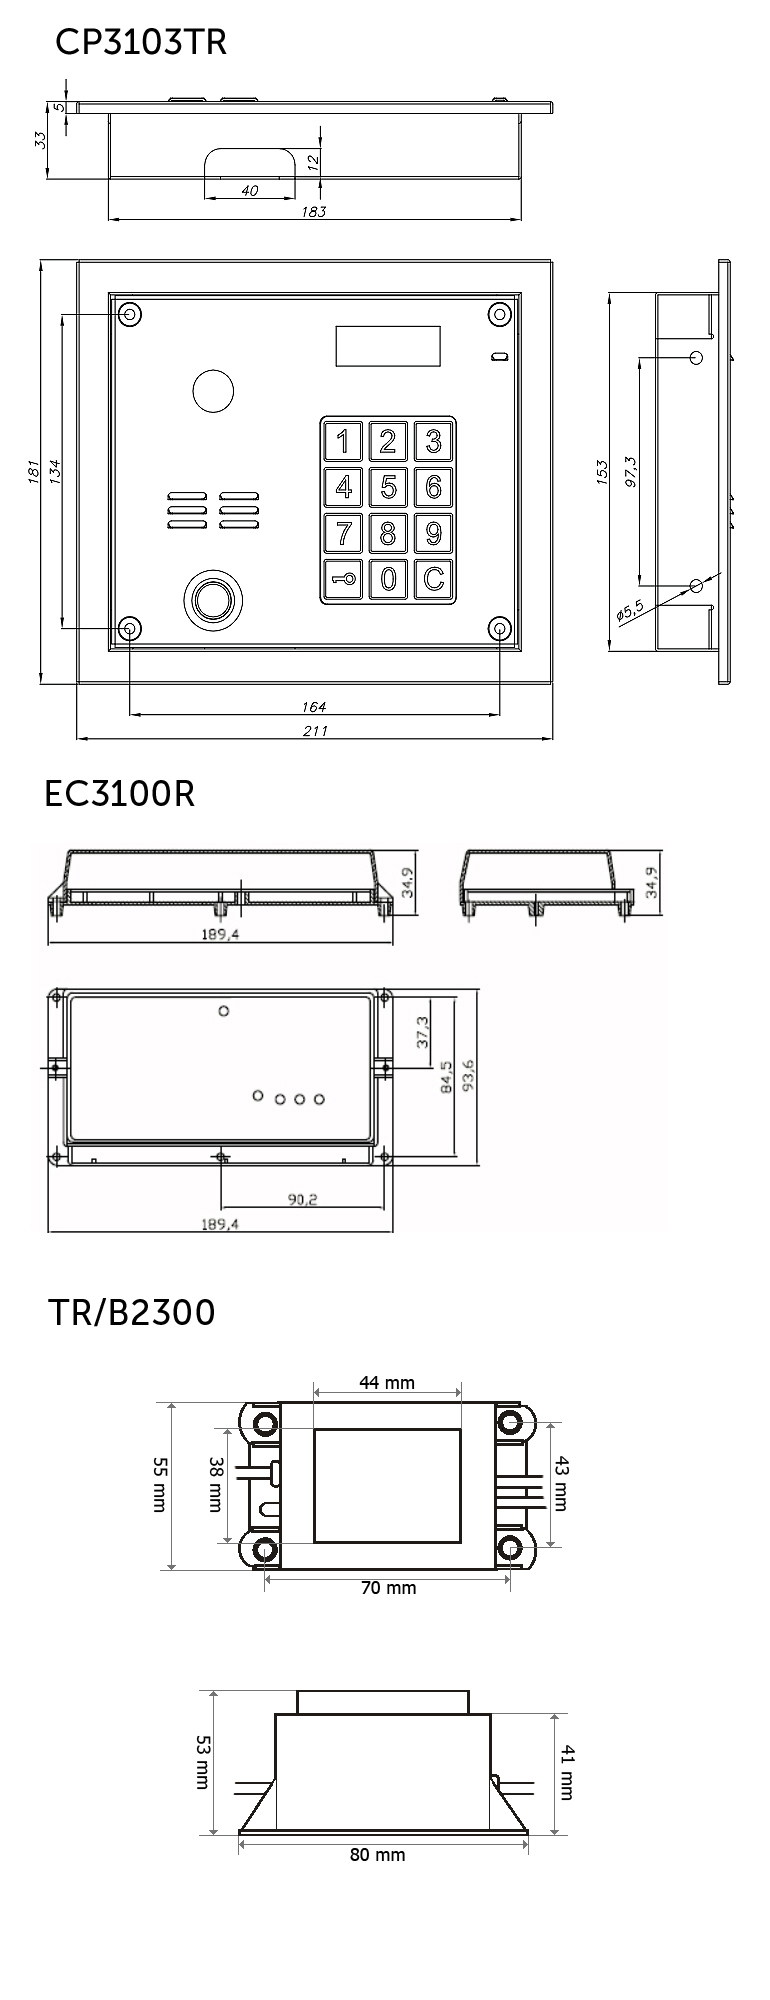 CD3103TR - wymiary panelu domofonowego, centralki i zasilacza.